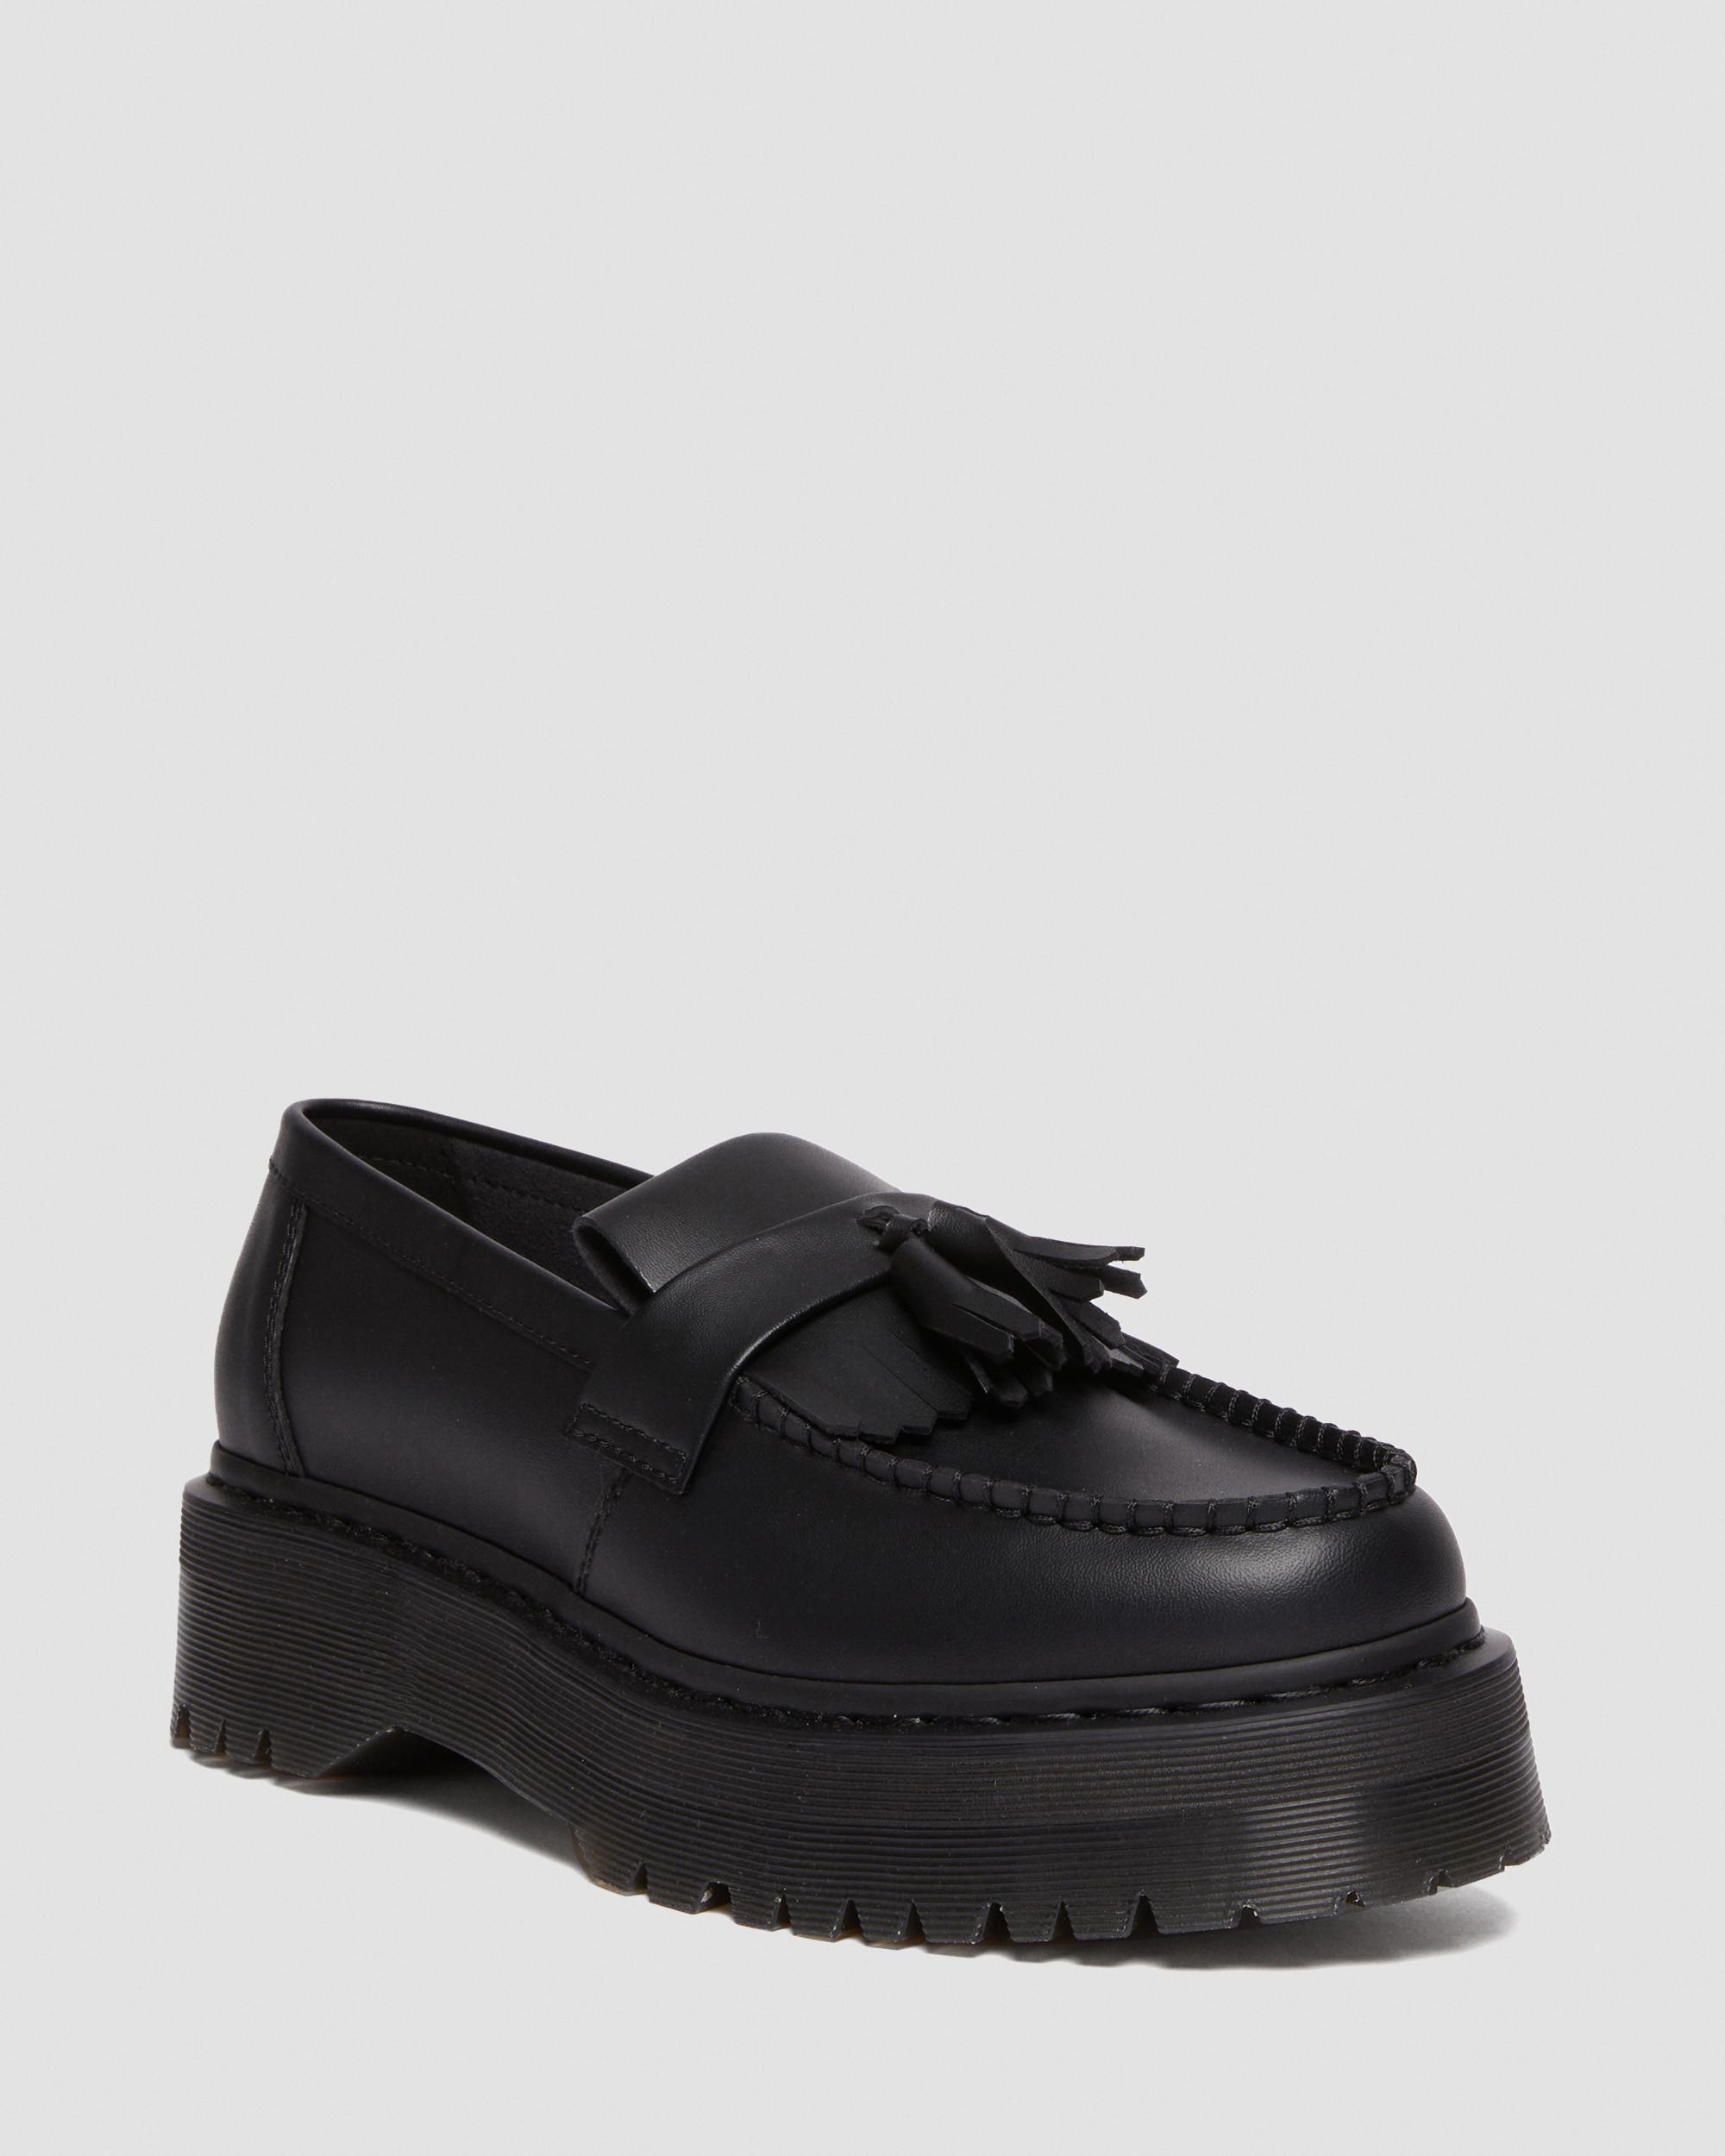 Vegan Adrian Felix Platform Tassel Loafers in Black | Dr. Martens